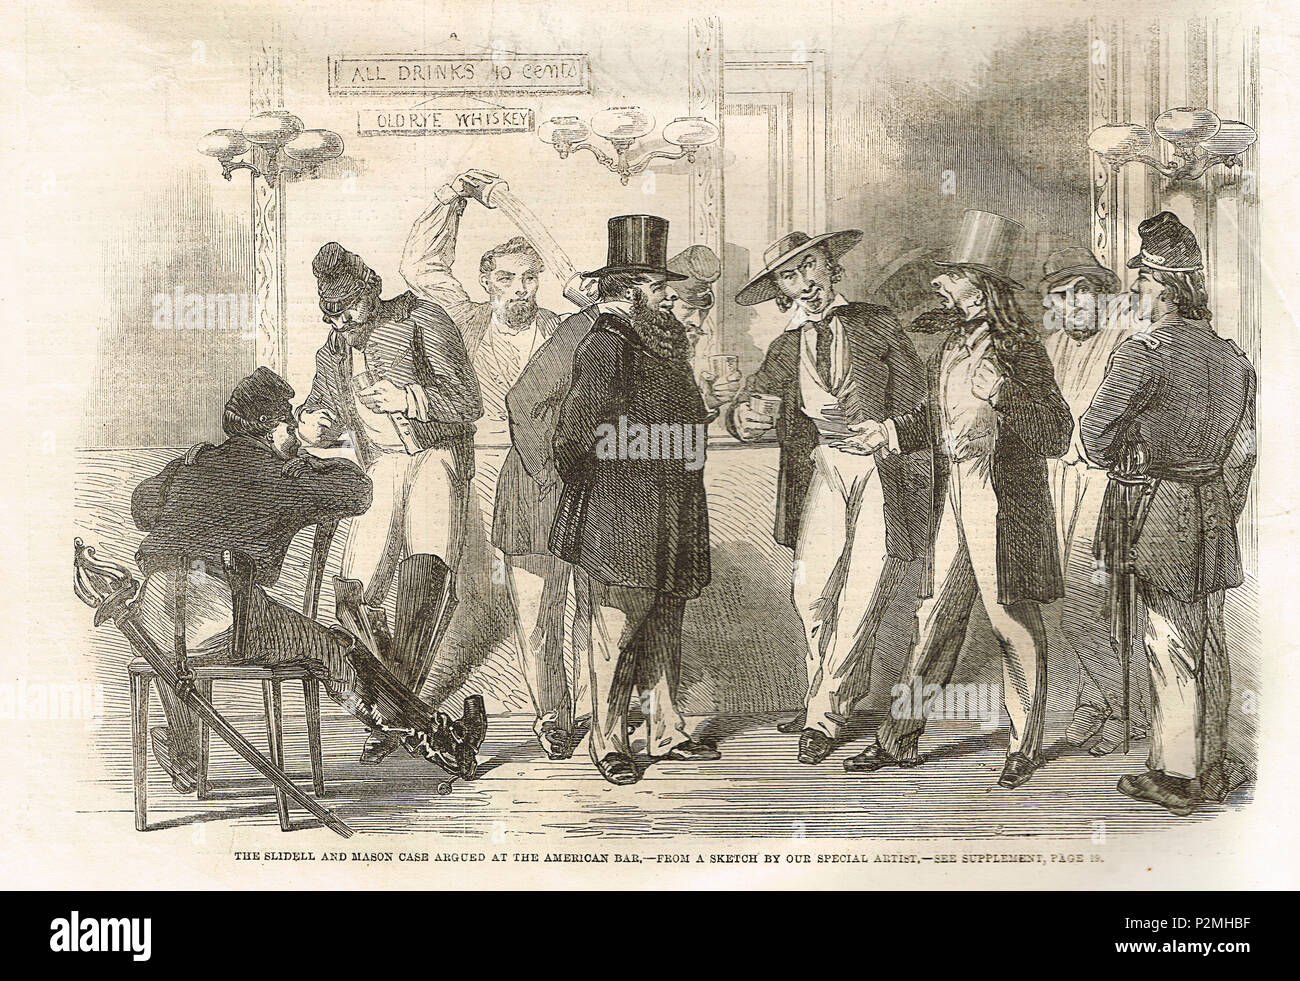 Il Caso Trent, sostenuto in corrispondenza di un American bar. Un incidente diplomatico nel 1861, durante la Guerra Civile Americana, che minaccia di una guerra tra gli Stati Uniti e il Regno Unito. Foto Stock